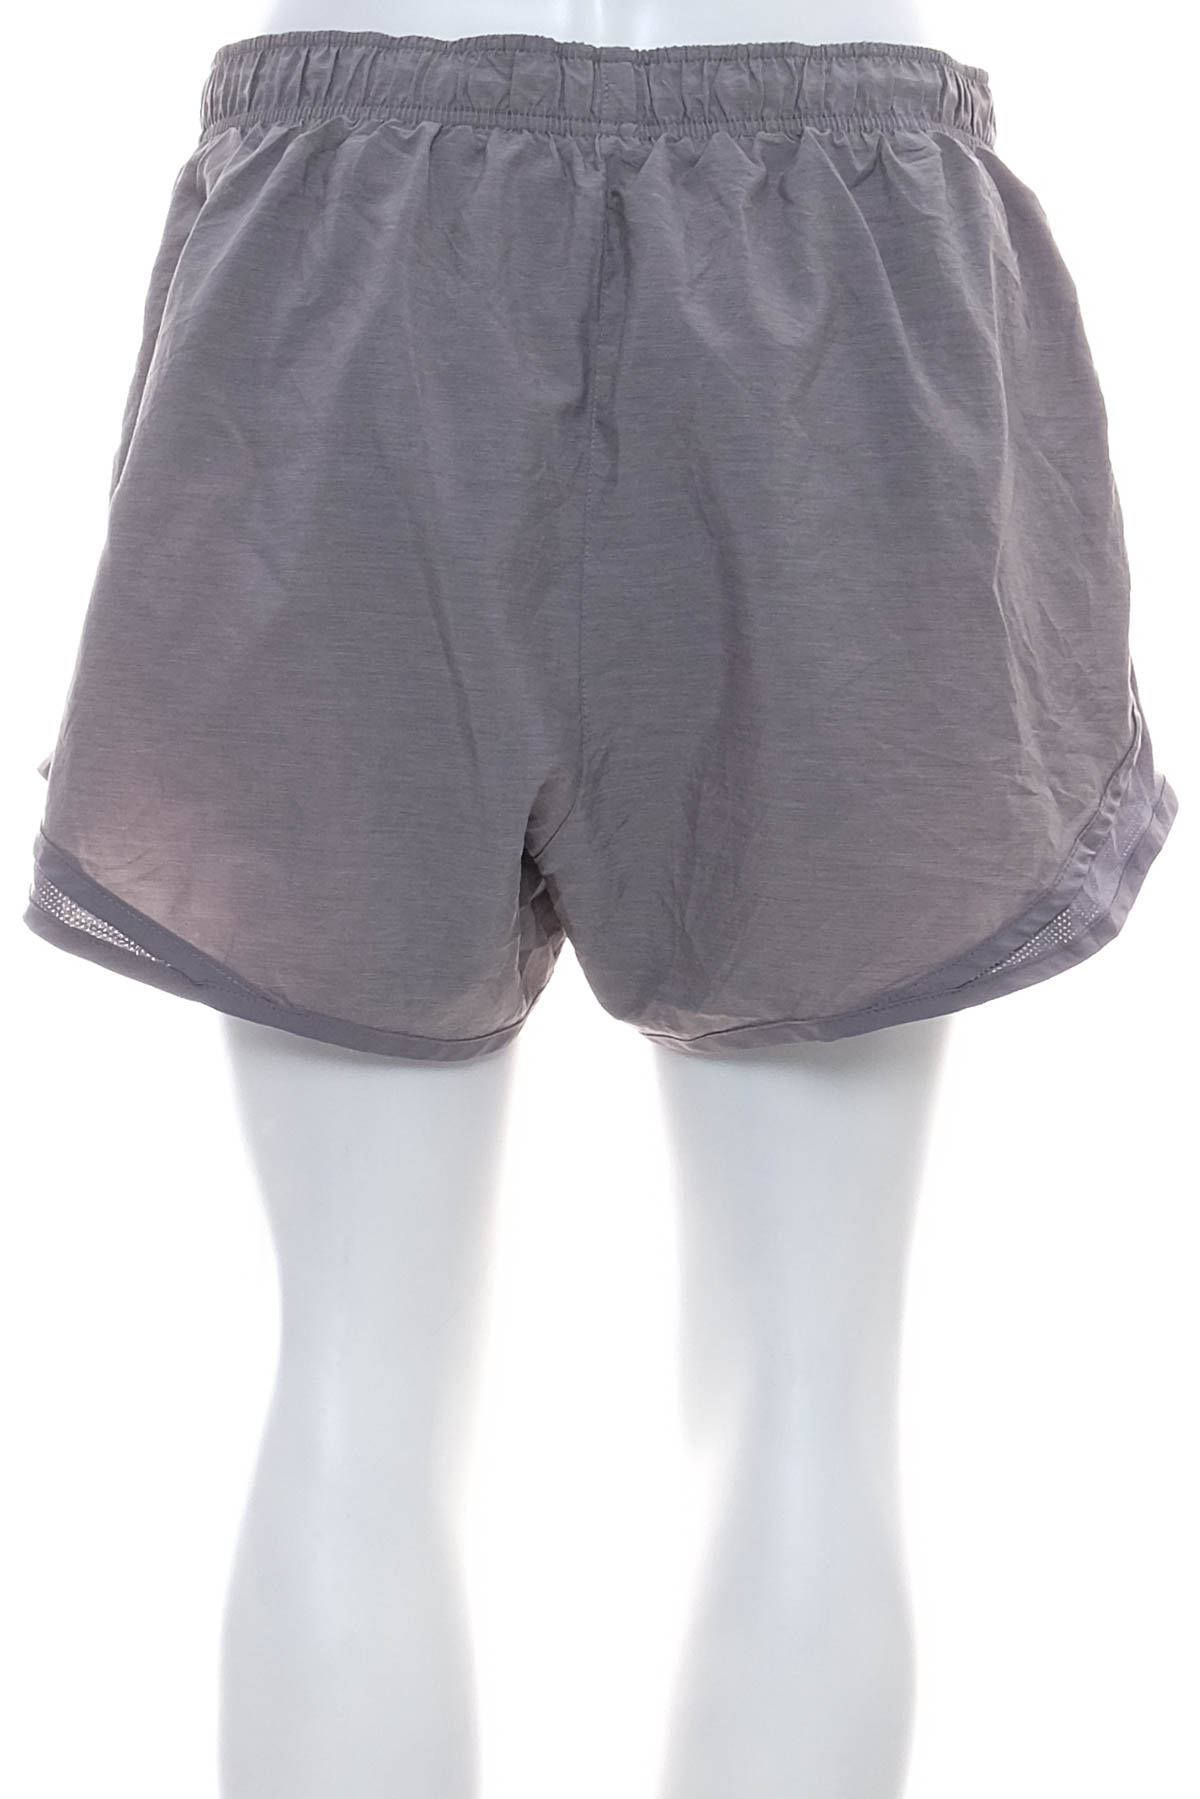 Women's shorts - NIKE - 1